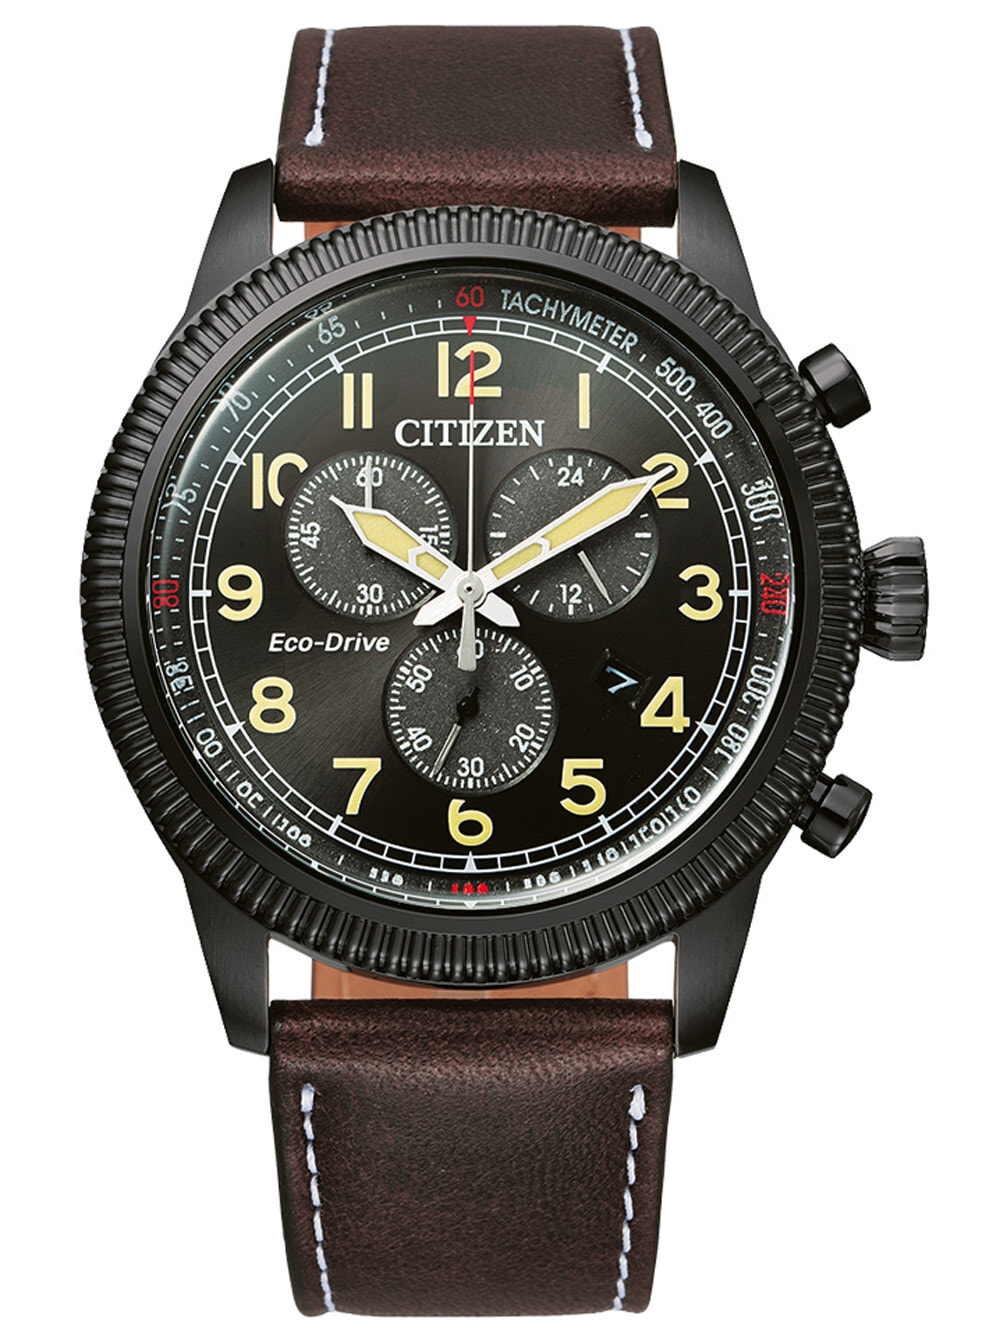 Мужские наручные часы с коричневым кожаным ремешком Citizen AT2465-18E Eco-Drive chrono 43mm 10ATM